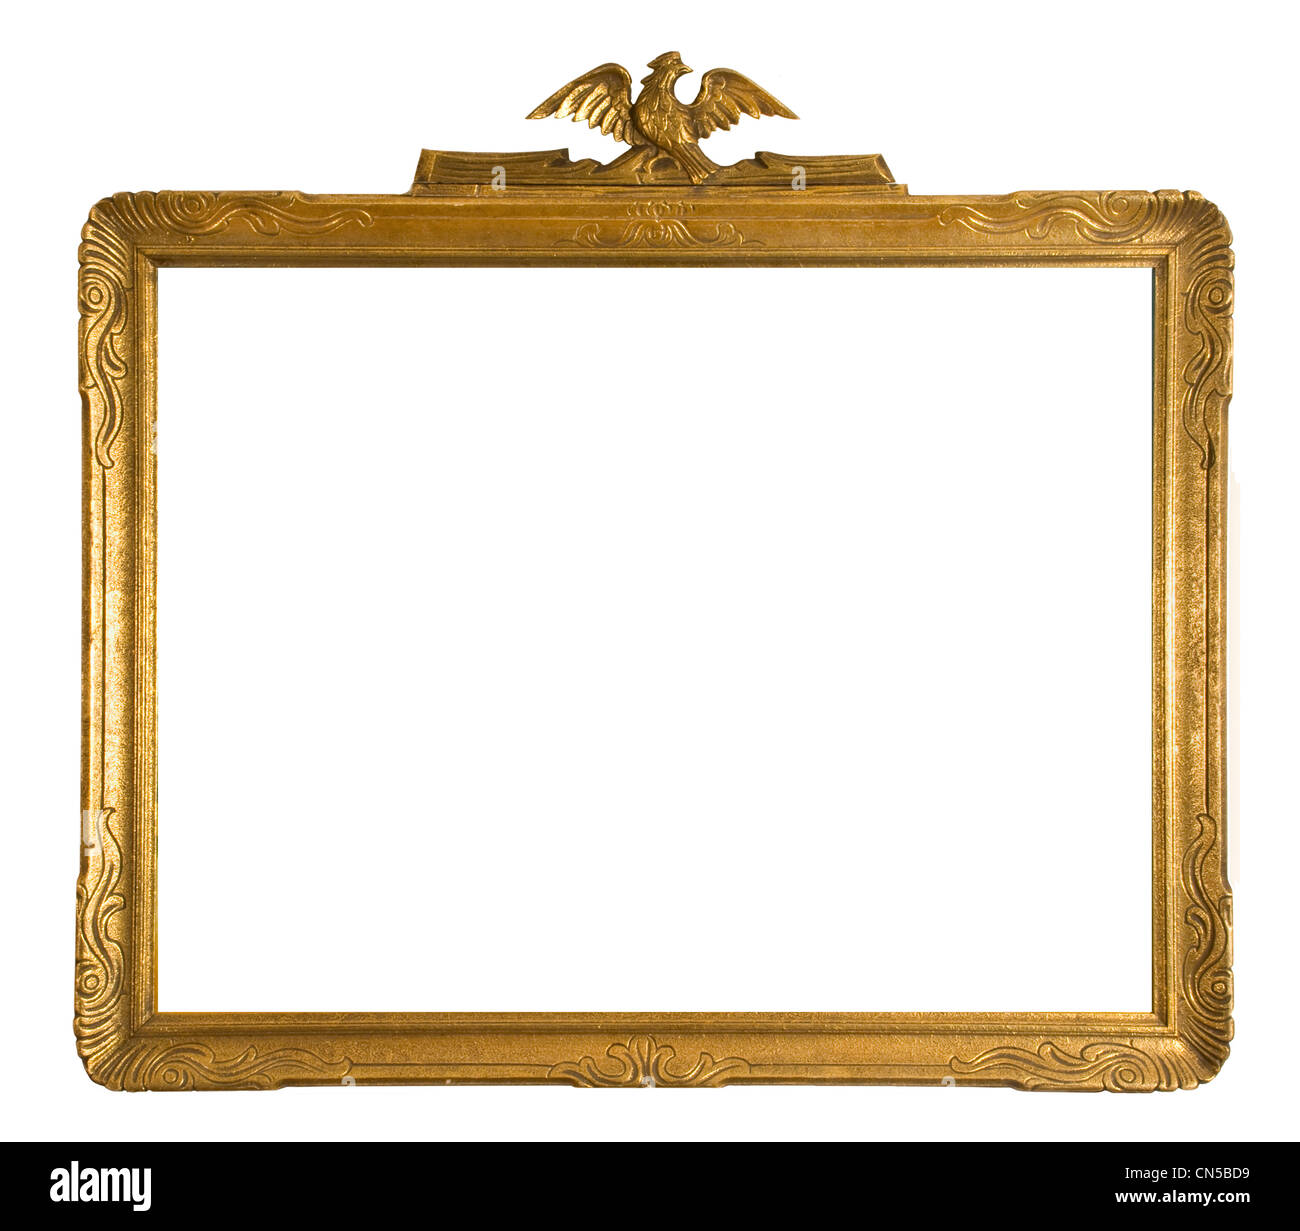 Antik gold verzierten Bilderrahmen isoliert auf weißem Hintergrund Stockfoto